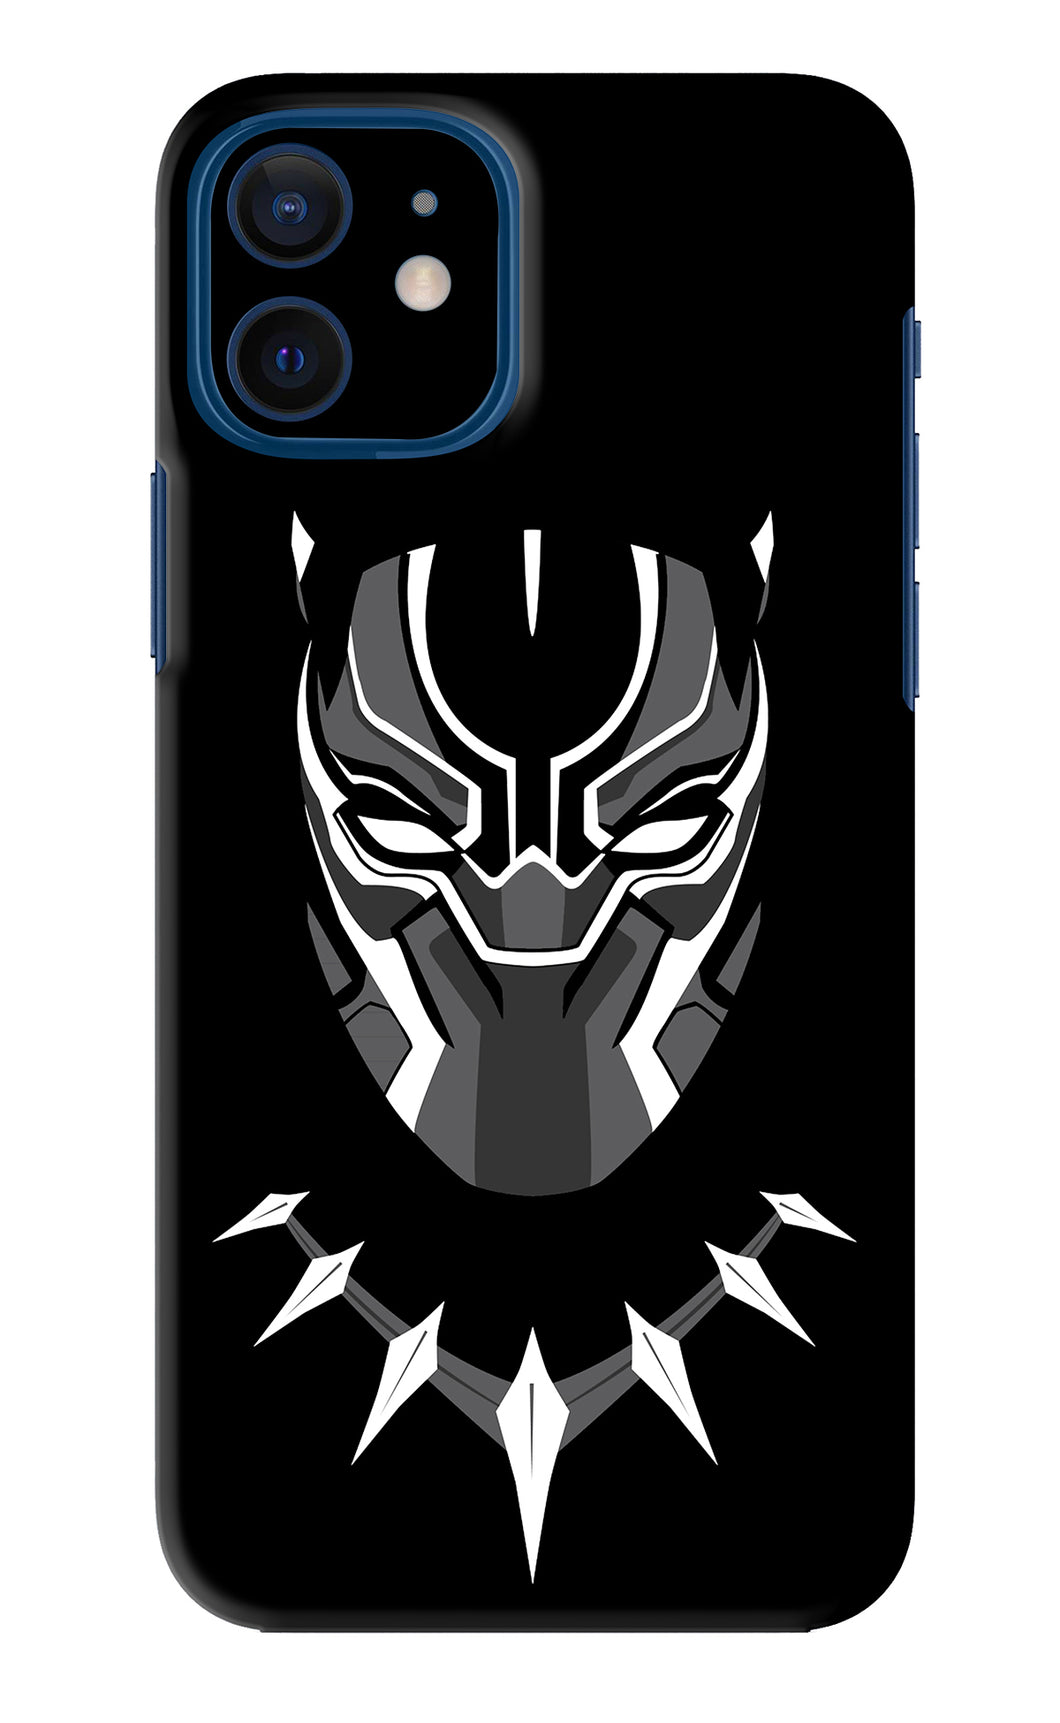 Black Panther iPhone 12 Back Skin Wrap